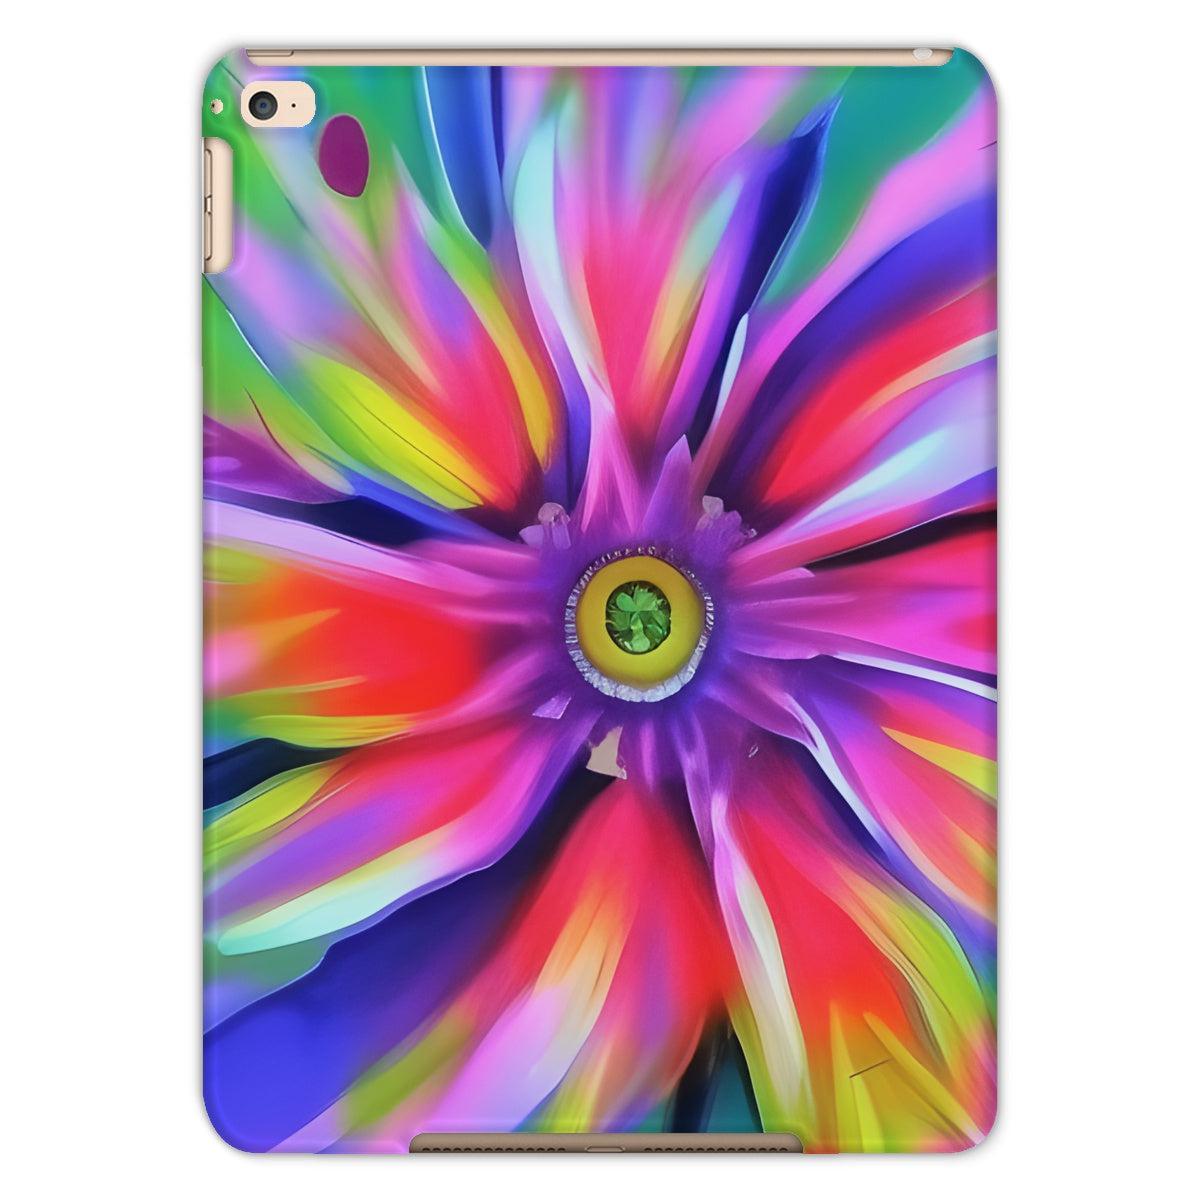 Surreal Flower Tablet Case